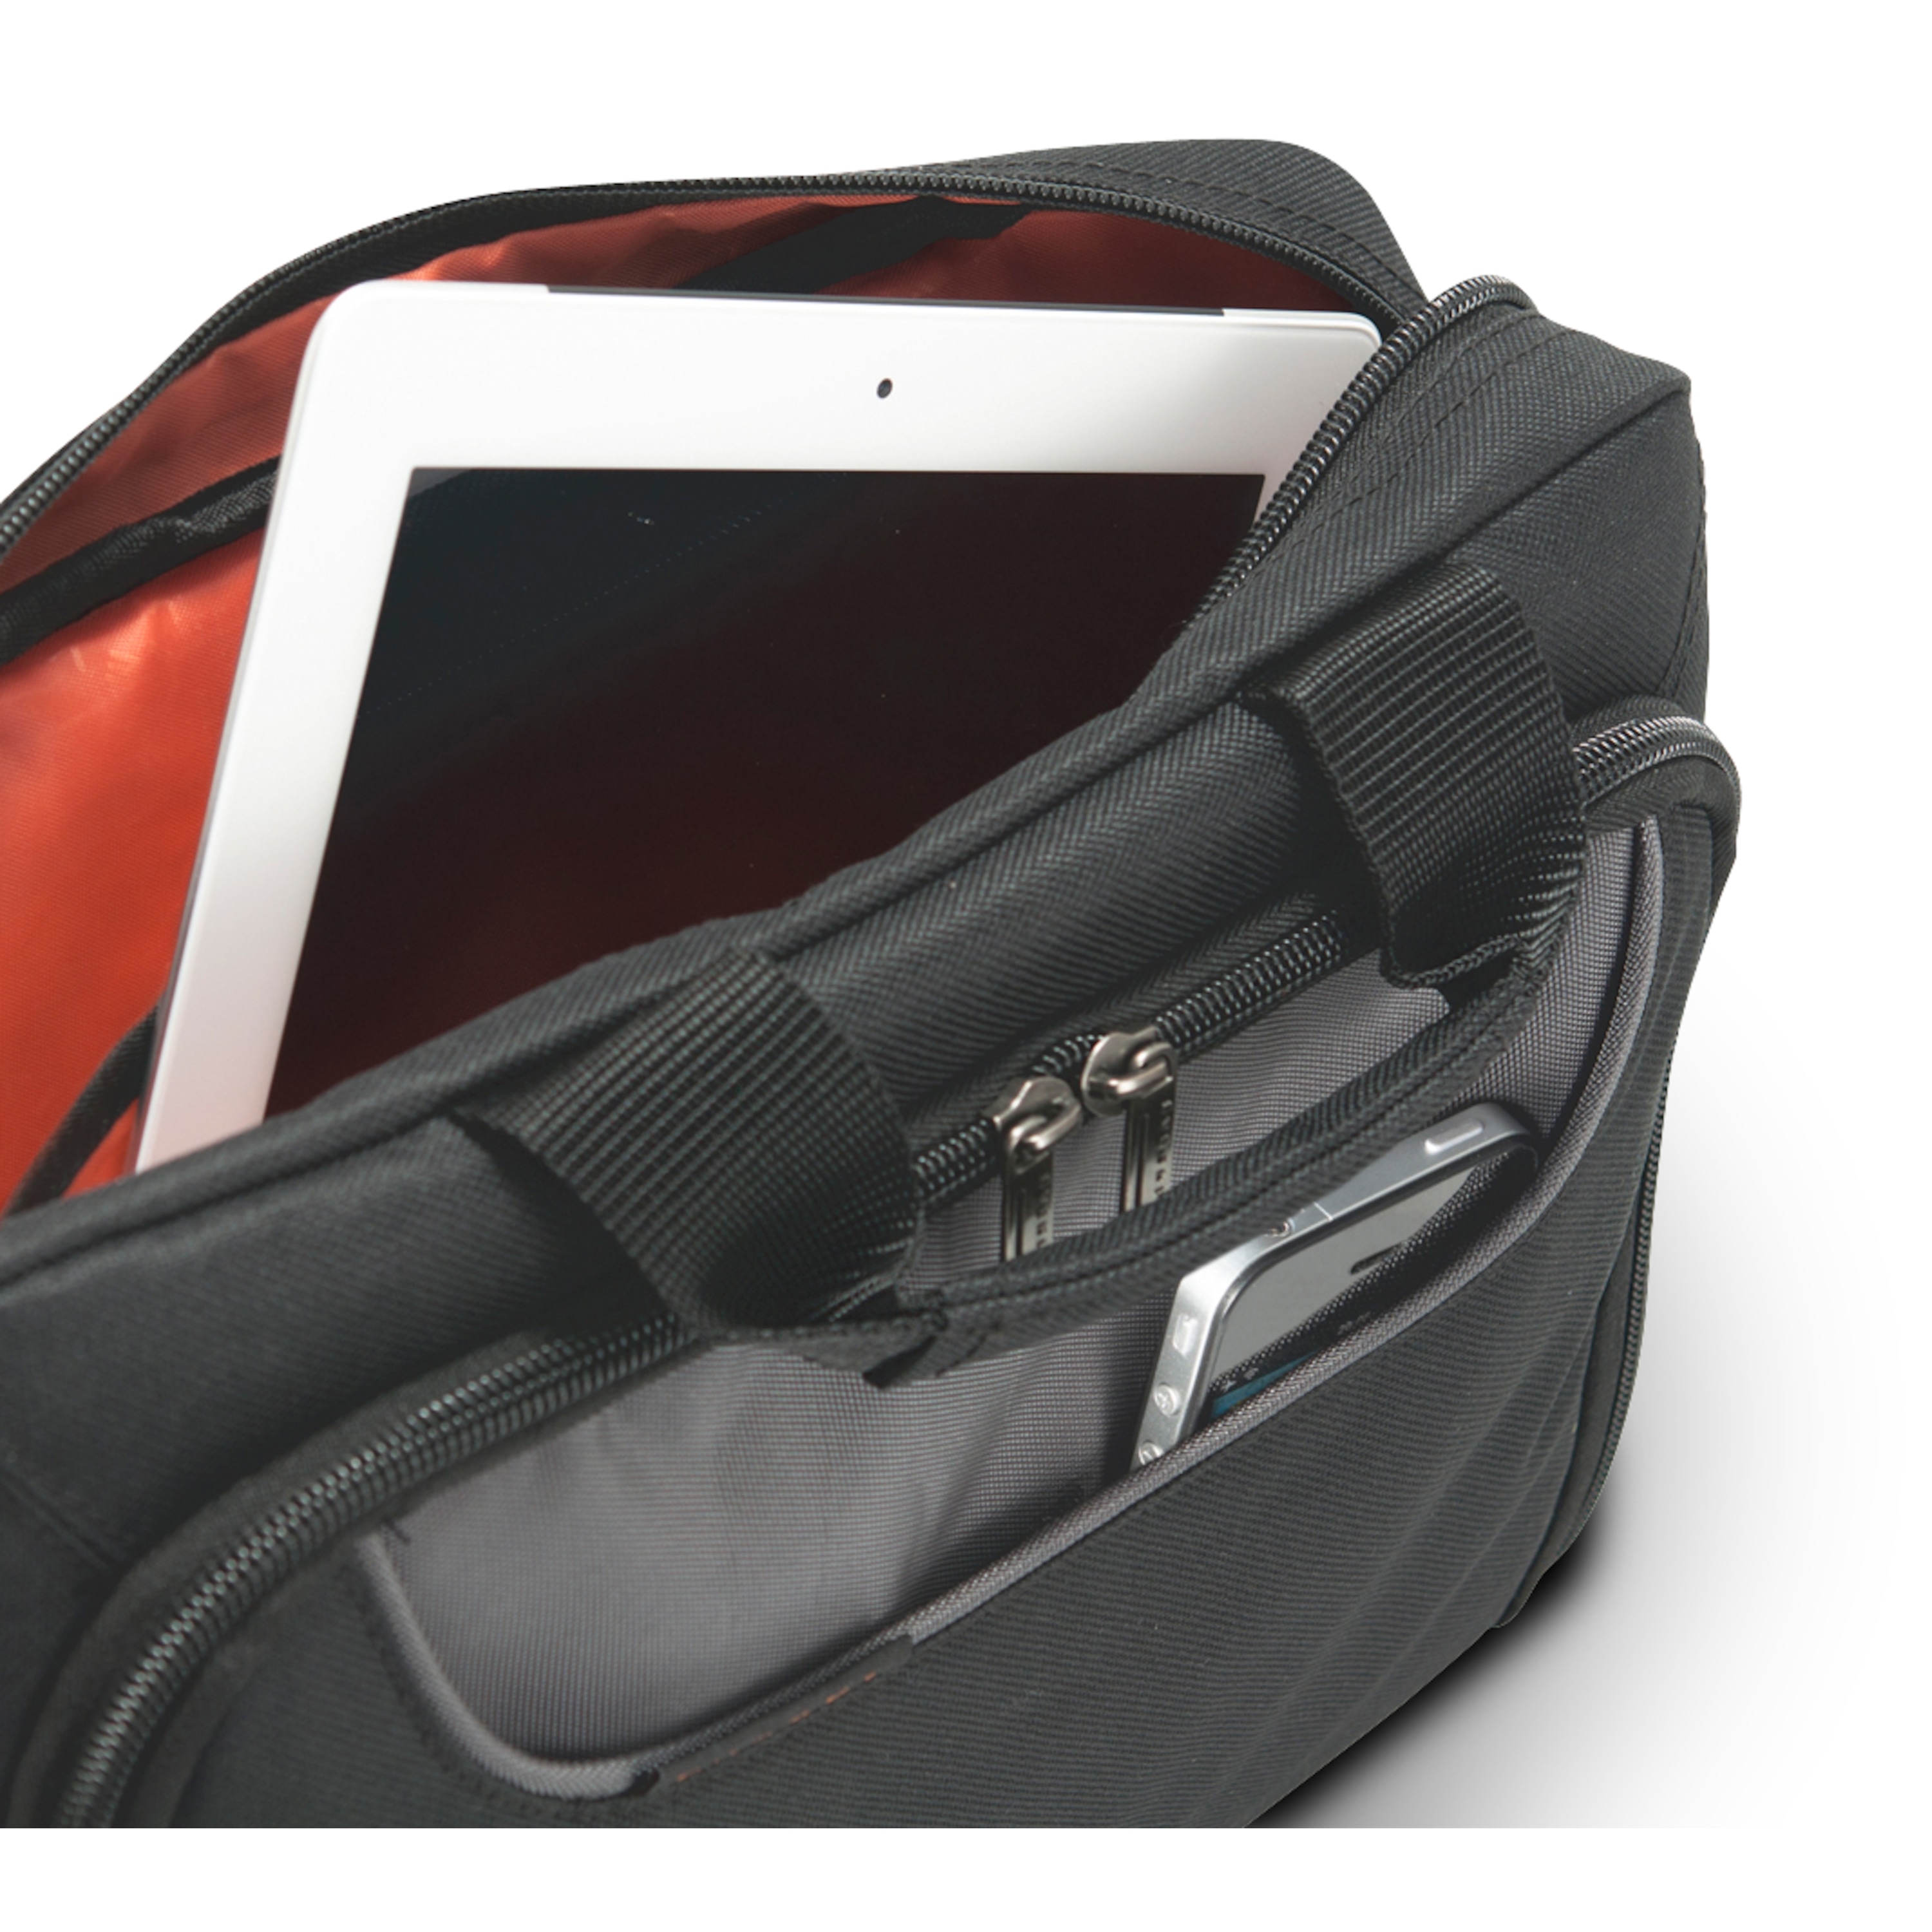 EVERKI Advance Laptoptasche, für Geräte bis 11,6", geräumig und besonders gepolstert, selbstheilende Reißverschlüsse